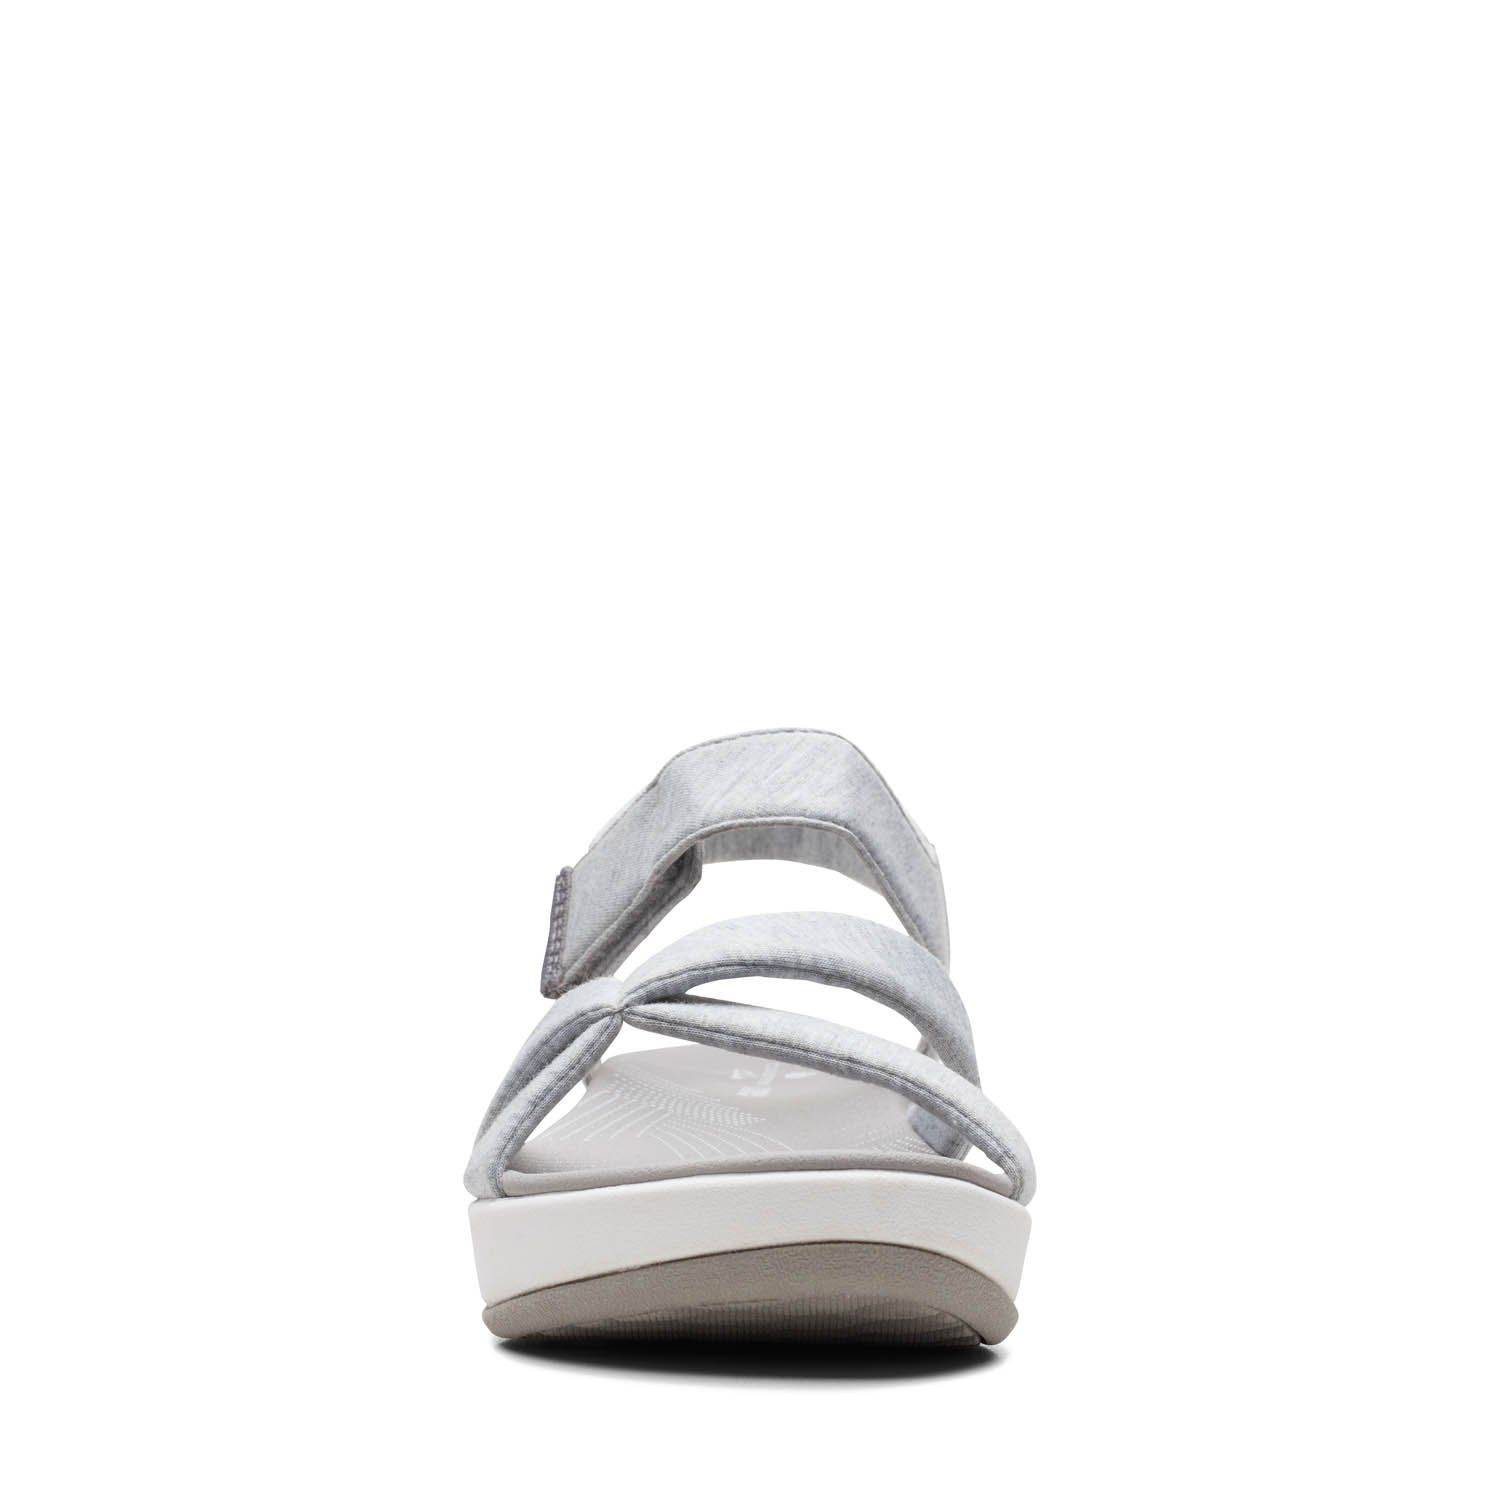 Женские сандалии Clarks (Arla Gracie 26159204), серые, цвет серый, размер 36 - фото 3